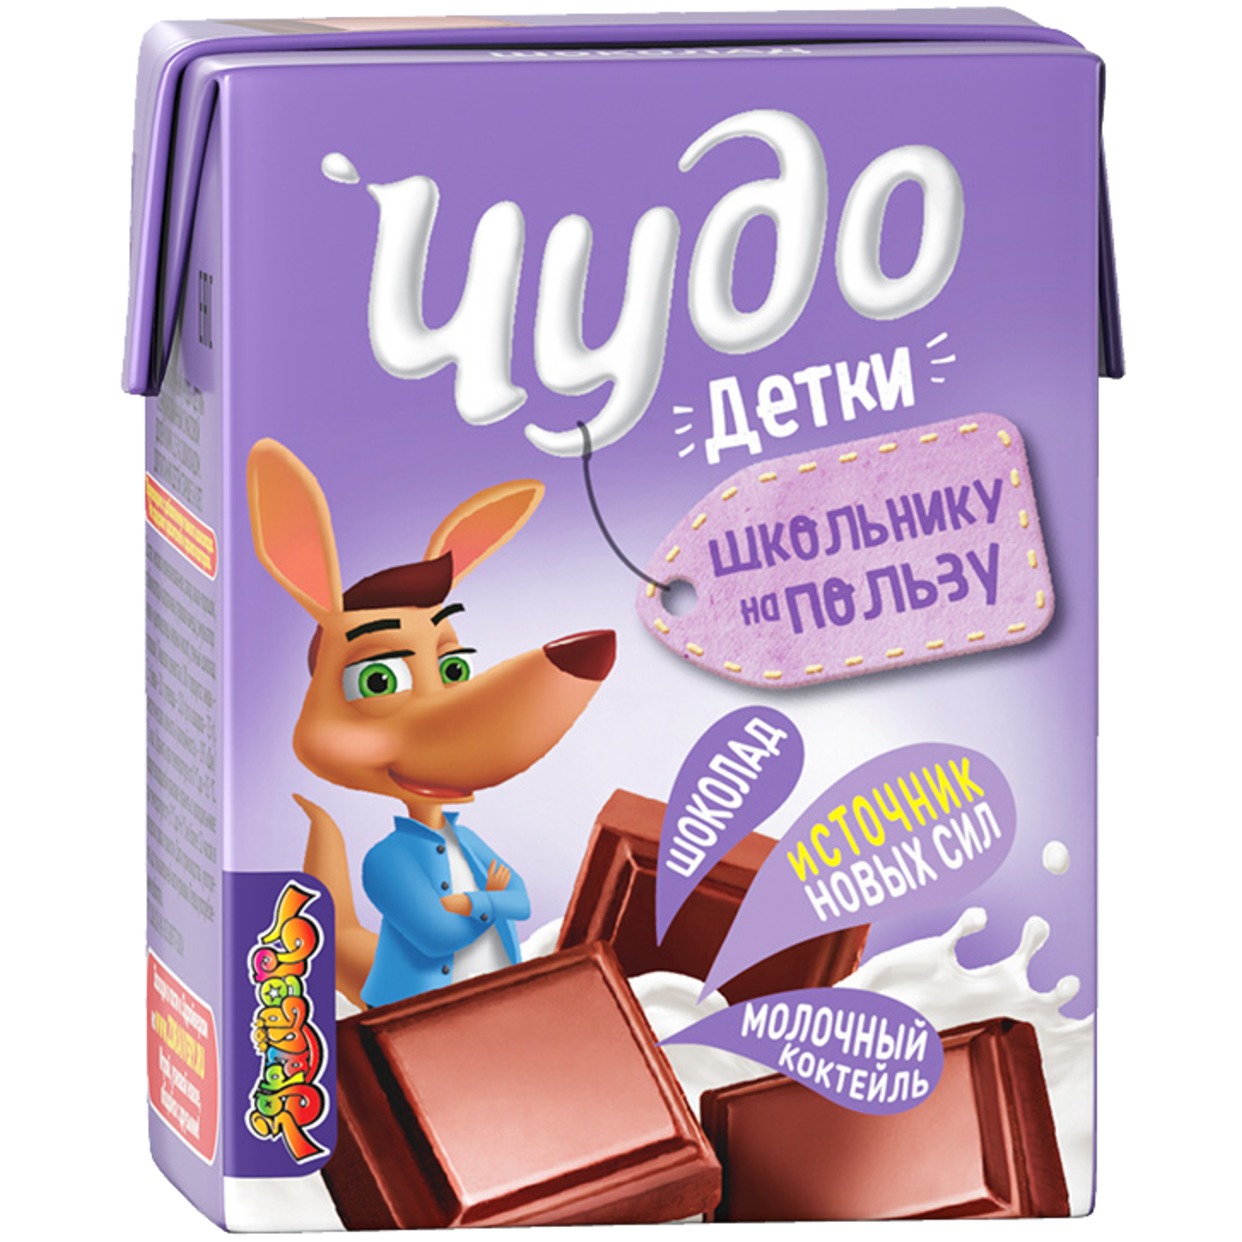 Коктейль молочный "Чудо Детки" Шоколадный 3.2% 200мл по акции в Пятерочке